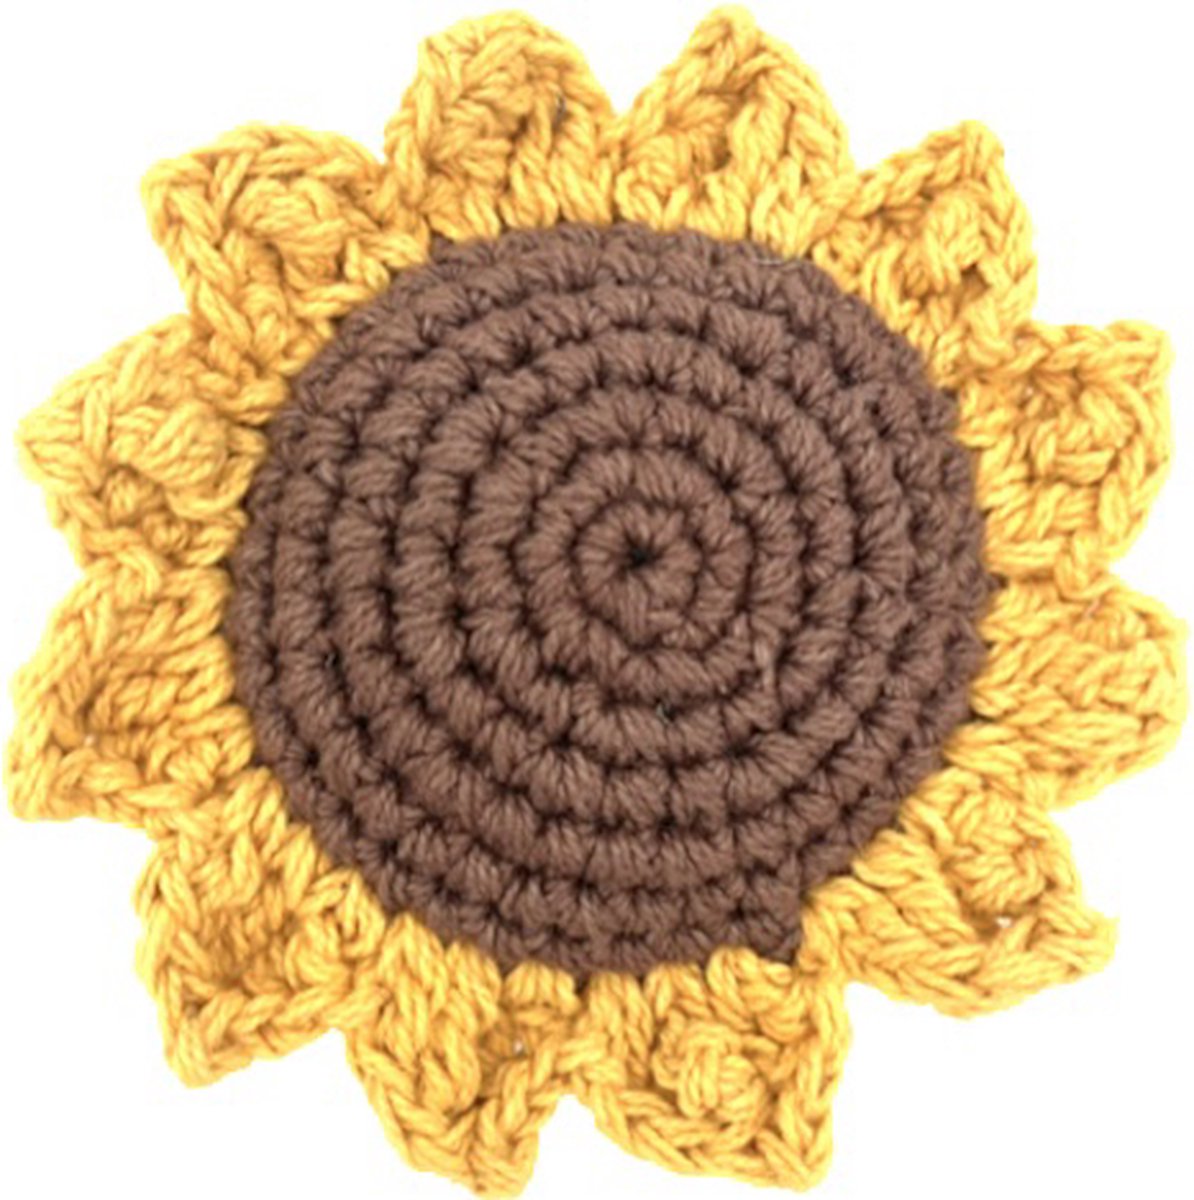 Luna-Leena duurzame zonnebloem broche - geel en bruin - bio katoen - hand gehaakt in Nepal - sunflower brooche - bloem - zomer - accesoire - cadeau